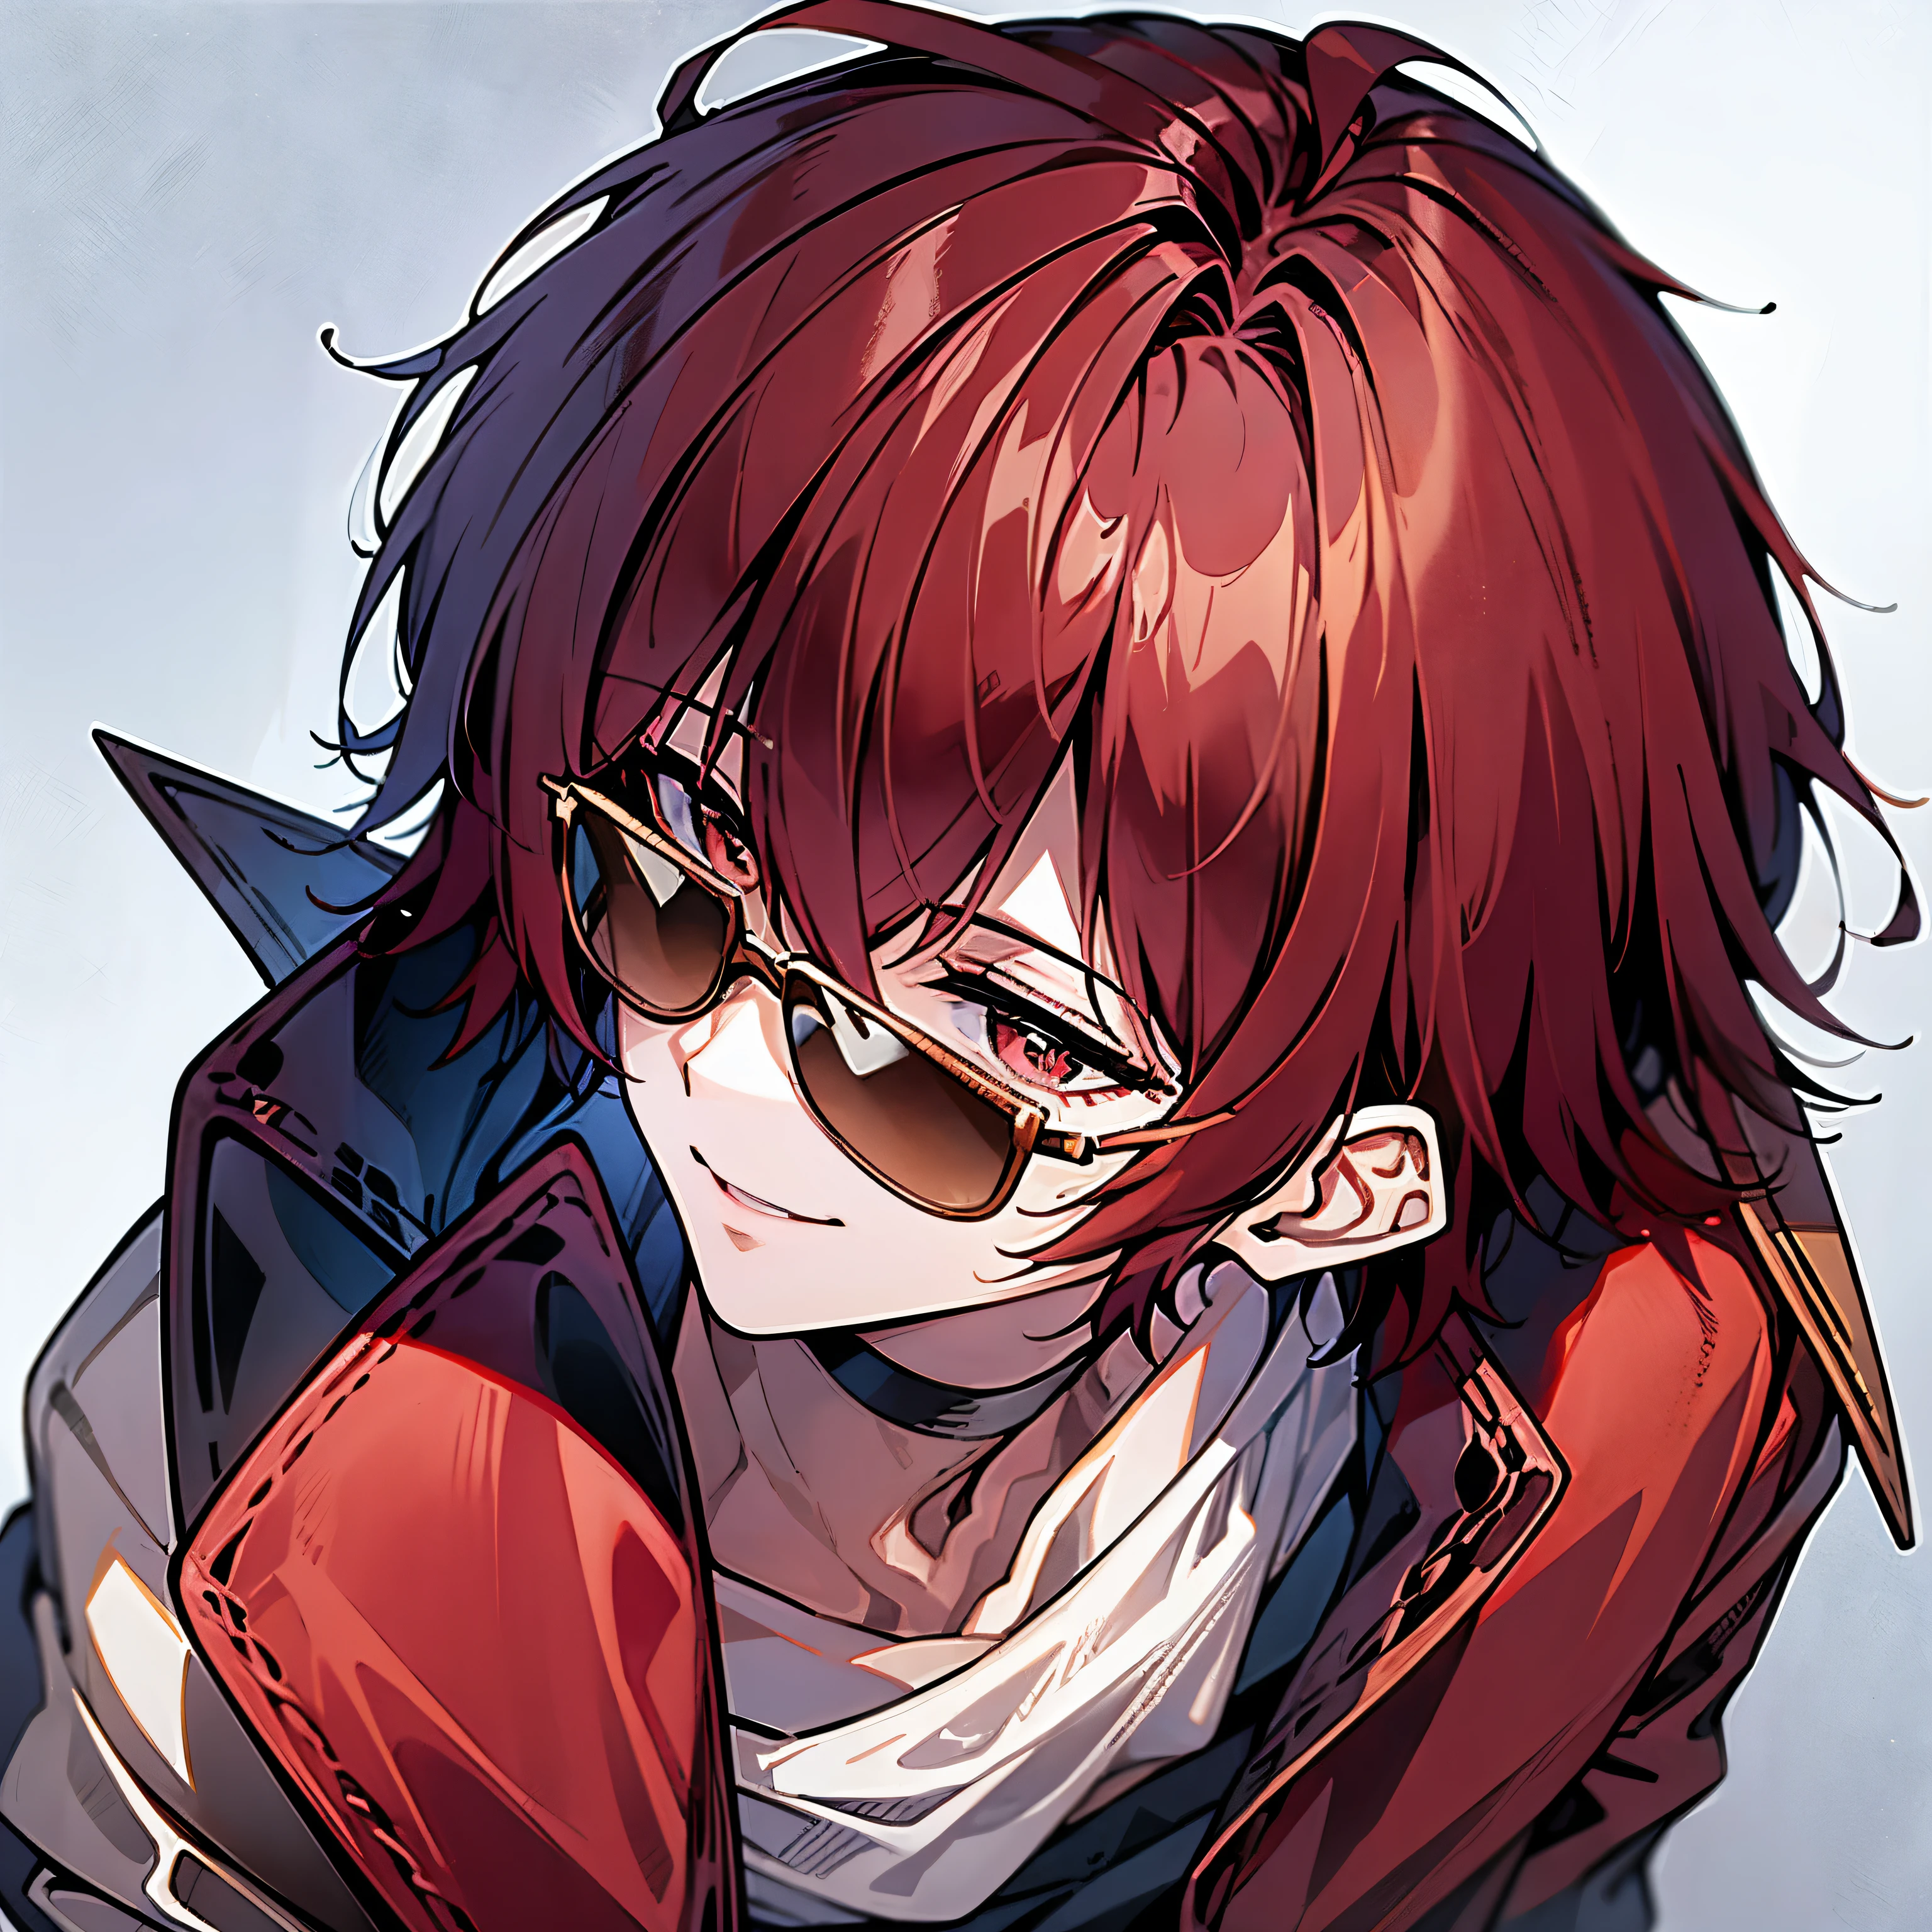 빨간 머리를 가진 남자, 머리 위에 선글라스를 얹고 웃고 있다, 보라색 재킷을 입고